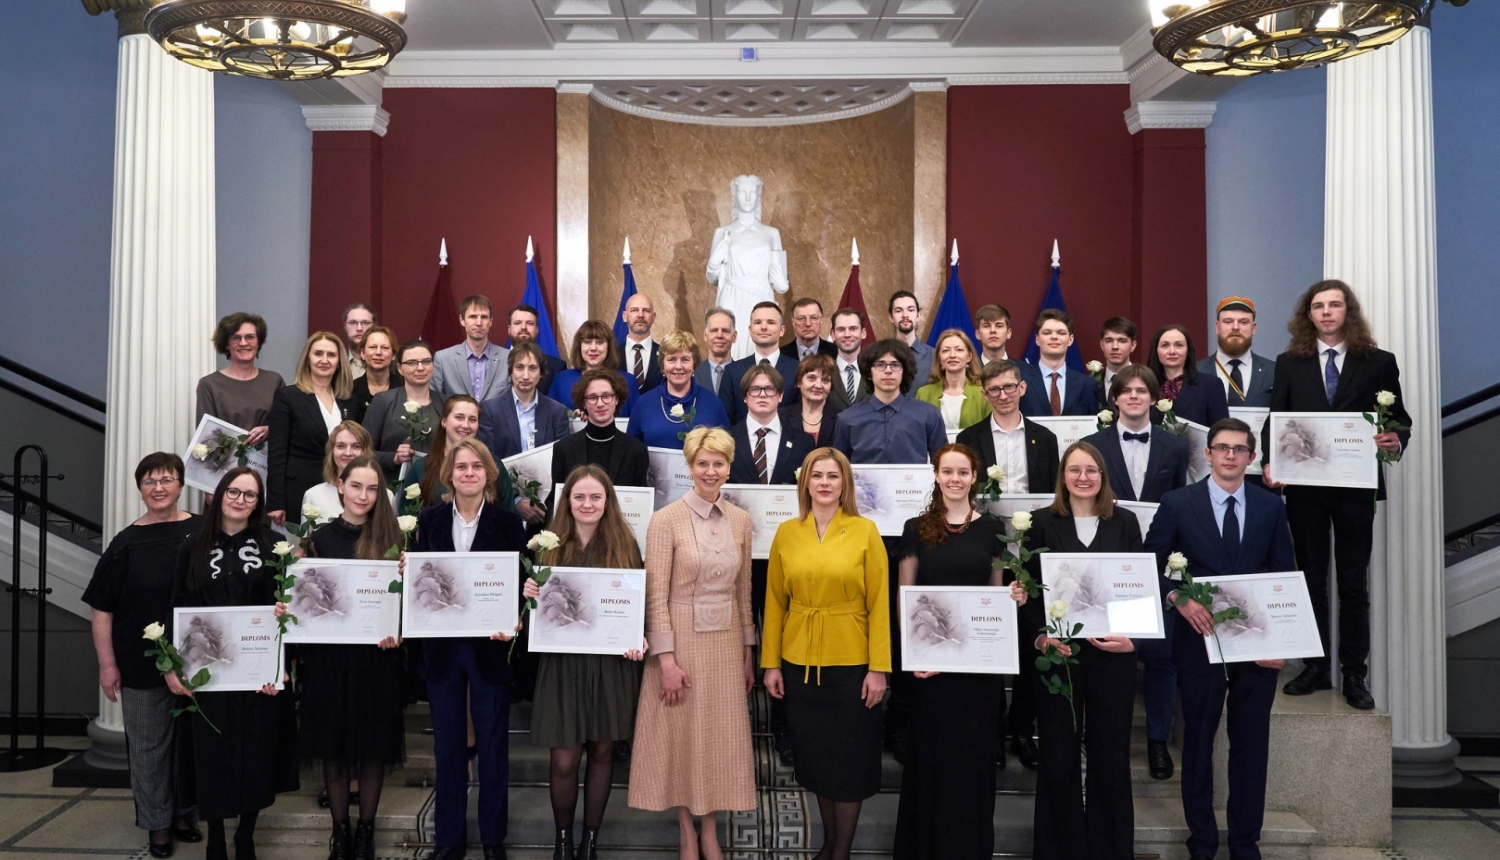 Par augstiem mācību sasniegumiem apbalvoto izcilāko Latvijas jauniešu un viņu pedagogu kopbilde, centrā stāv Ministru prezidente Evika Siliņa un izglītības un zinātnes ministre Anda Čakša